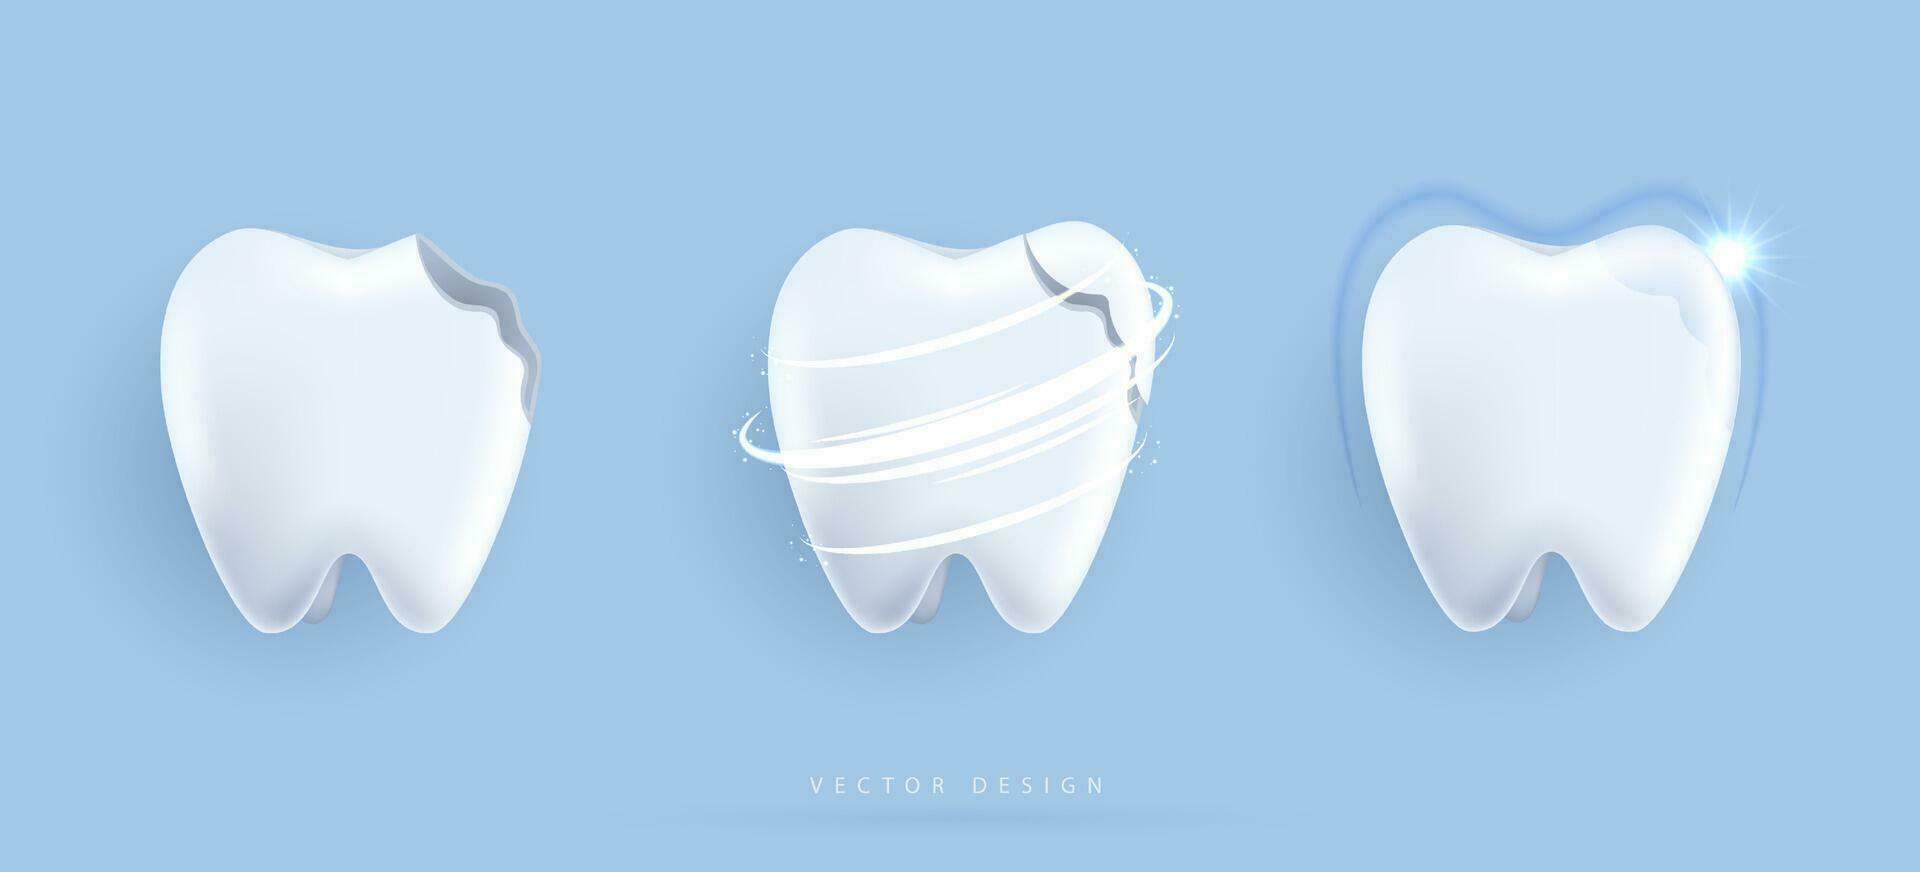 conjunto de dental limpieza y blanqueo dientes concepto. comparación de limpiar y sucio diente. dental salud y oral higiene póster para odontología. examen dientes, blanqueo y reparar. vector diseño.